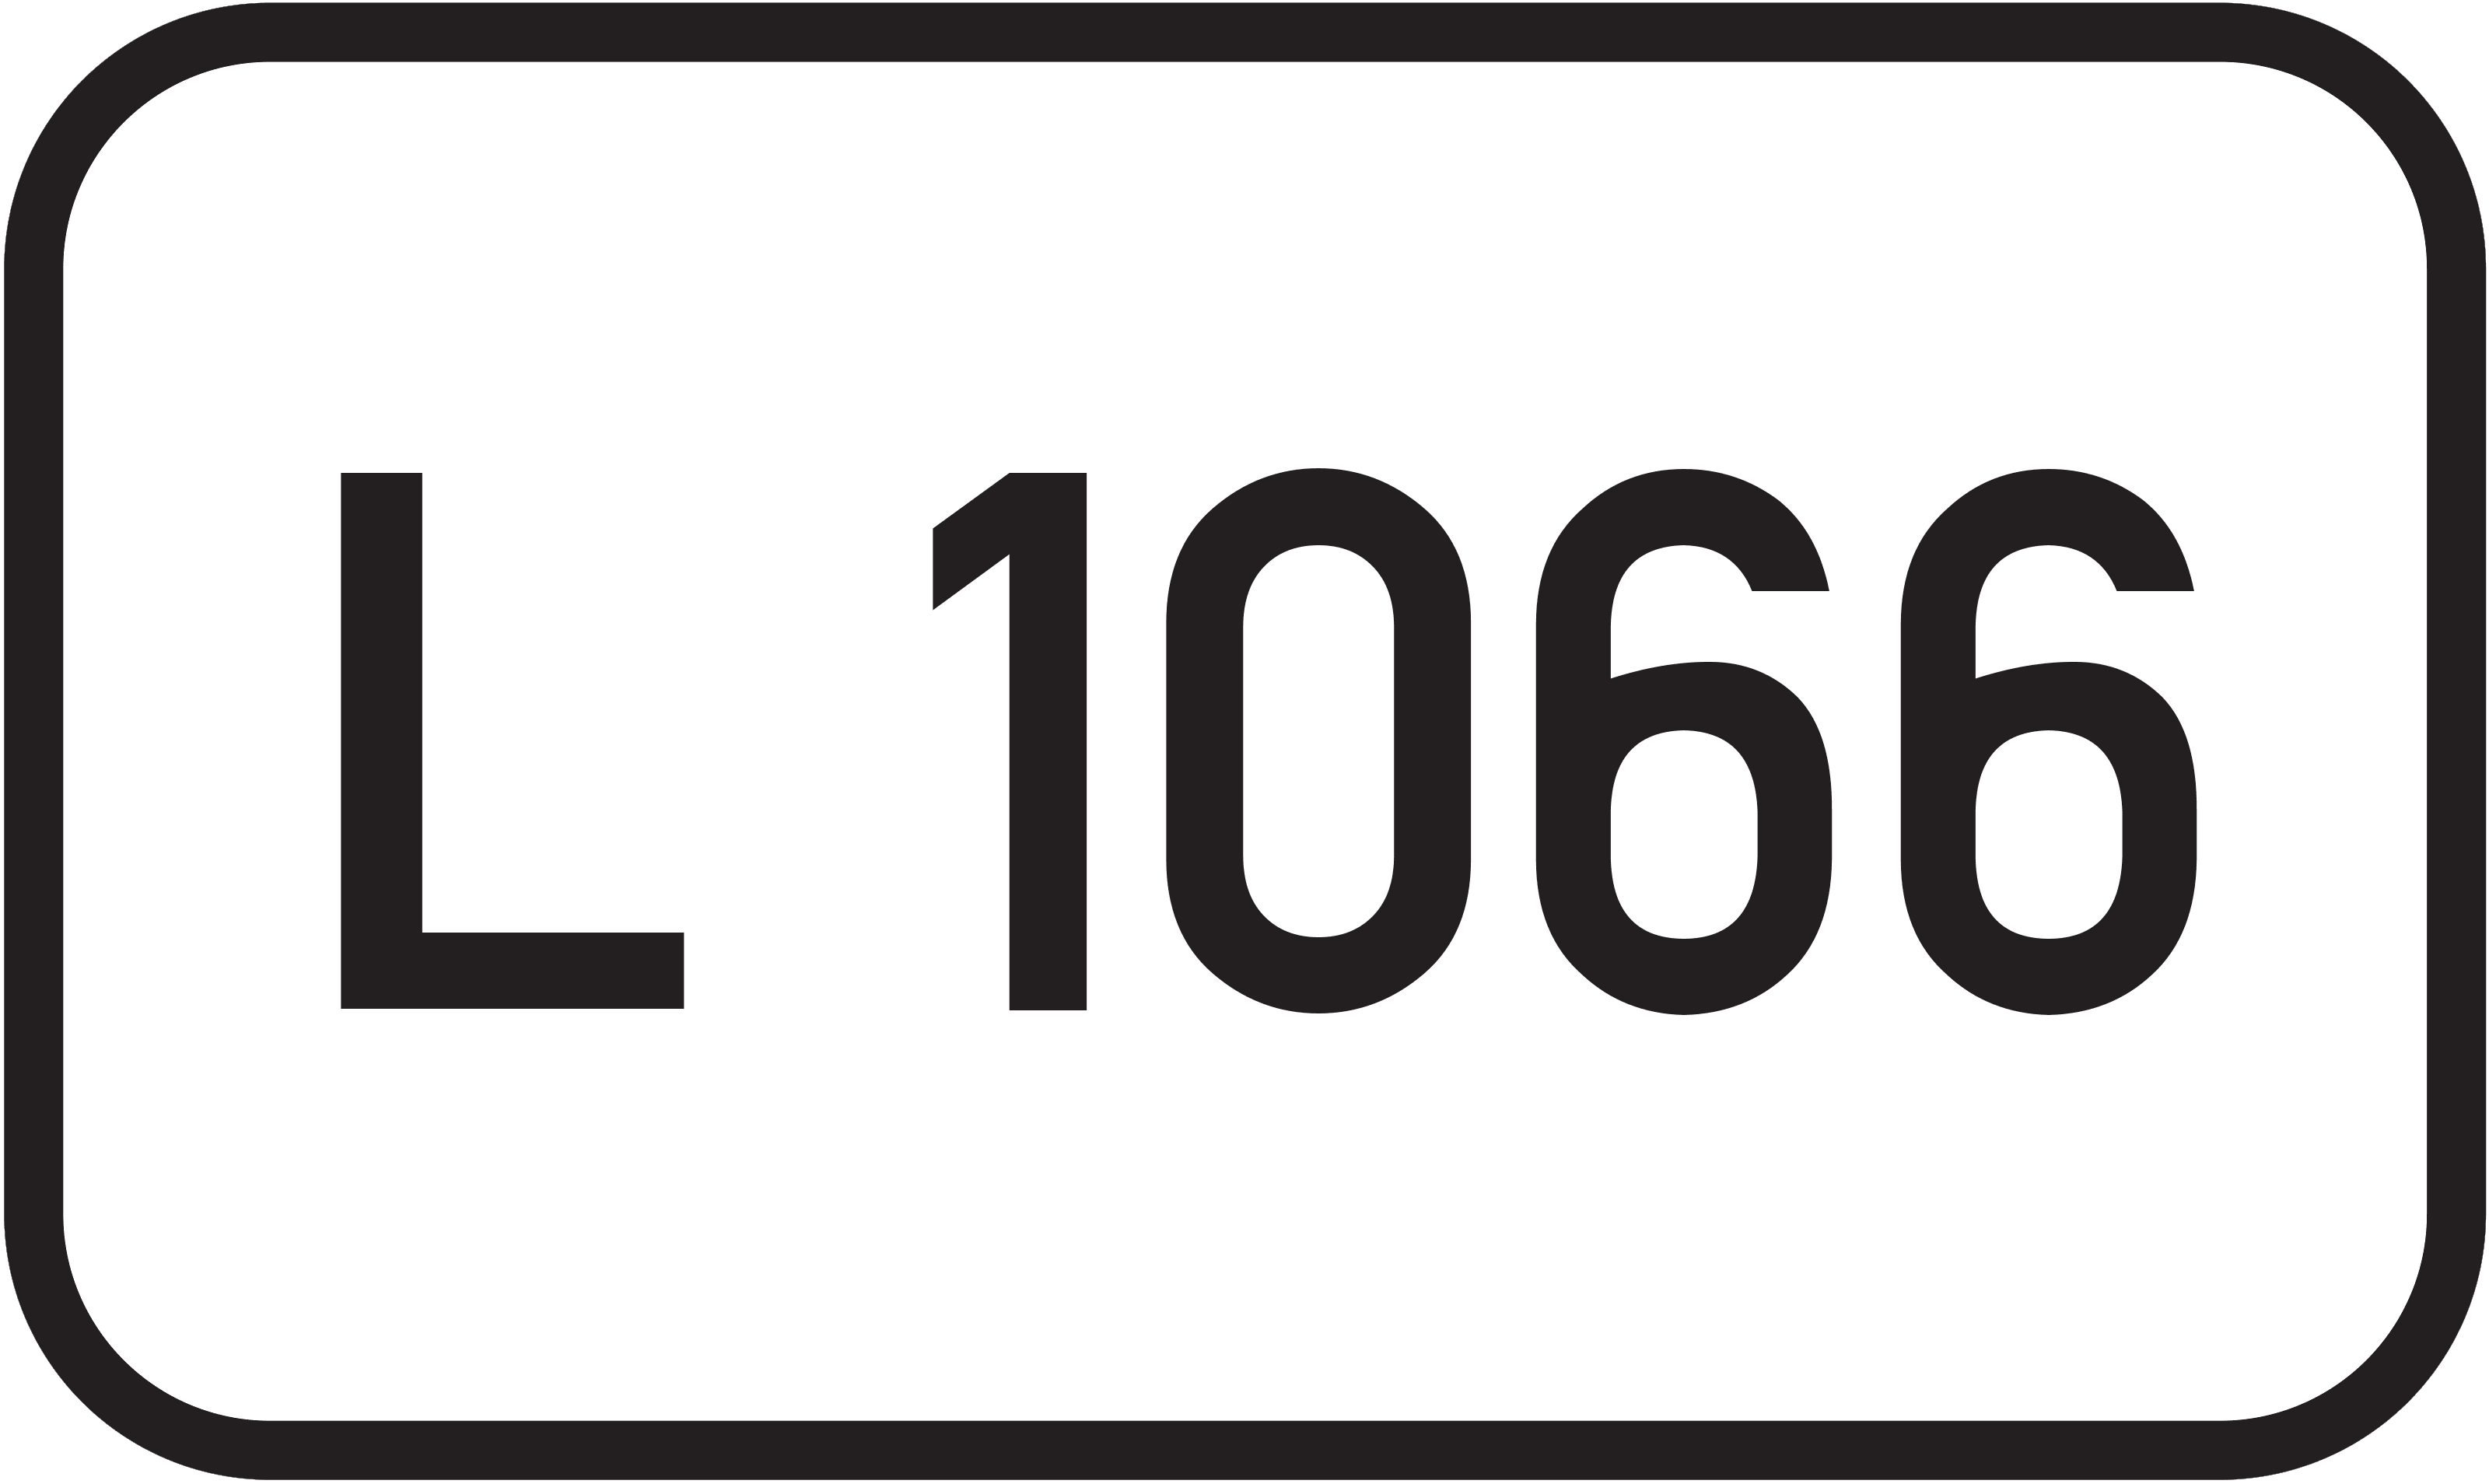 Landesstraße L 1066